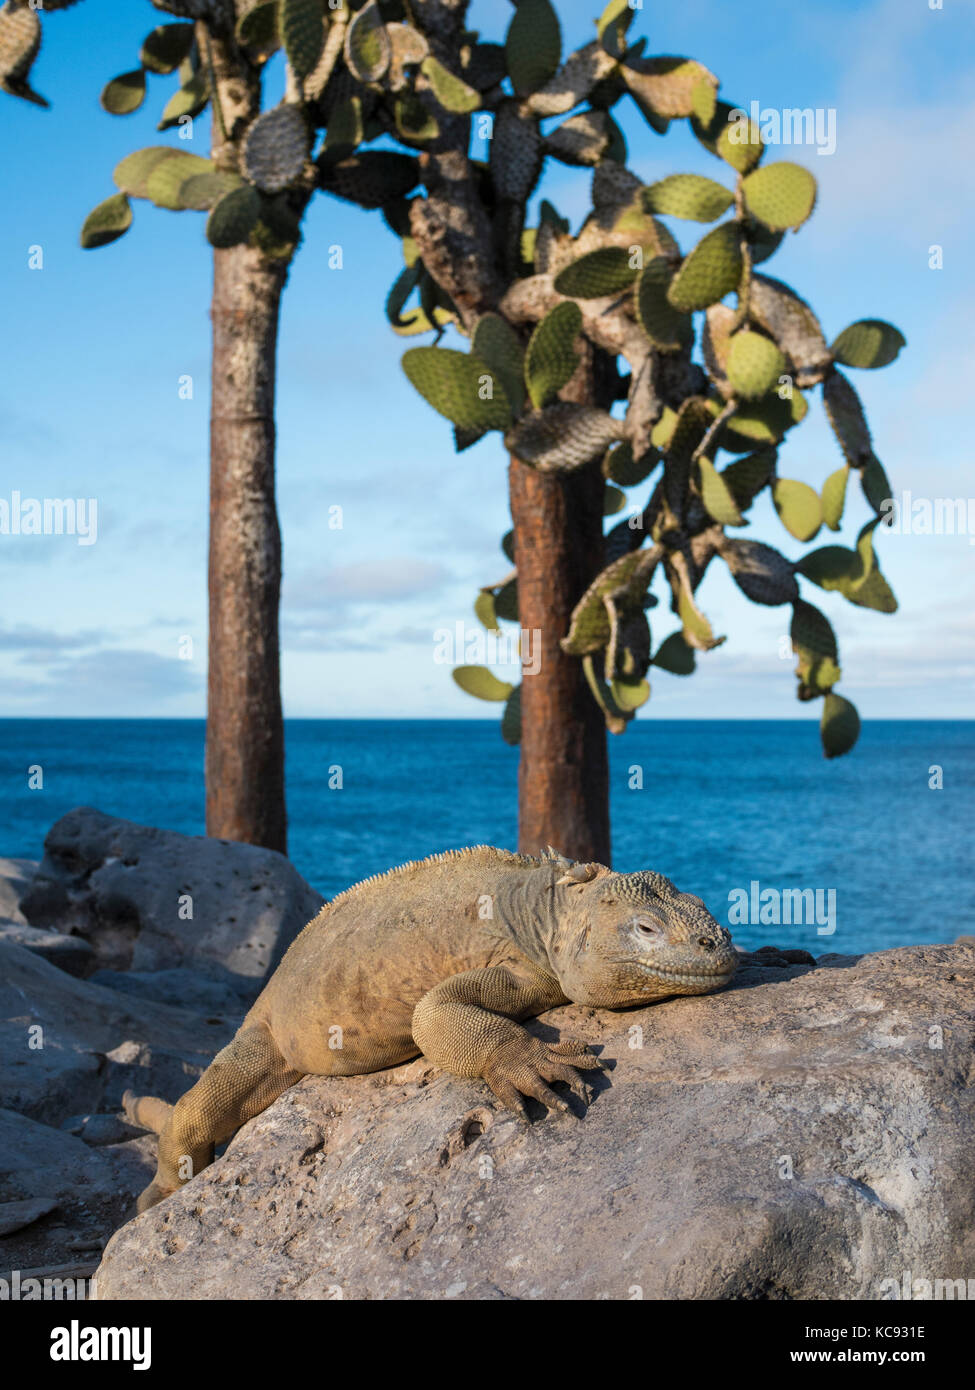 Iguana sur l'île de Santa Fe - Galapagos, Equateur Banque D'Images